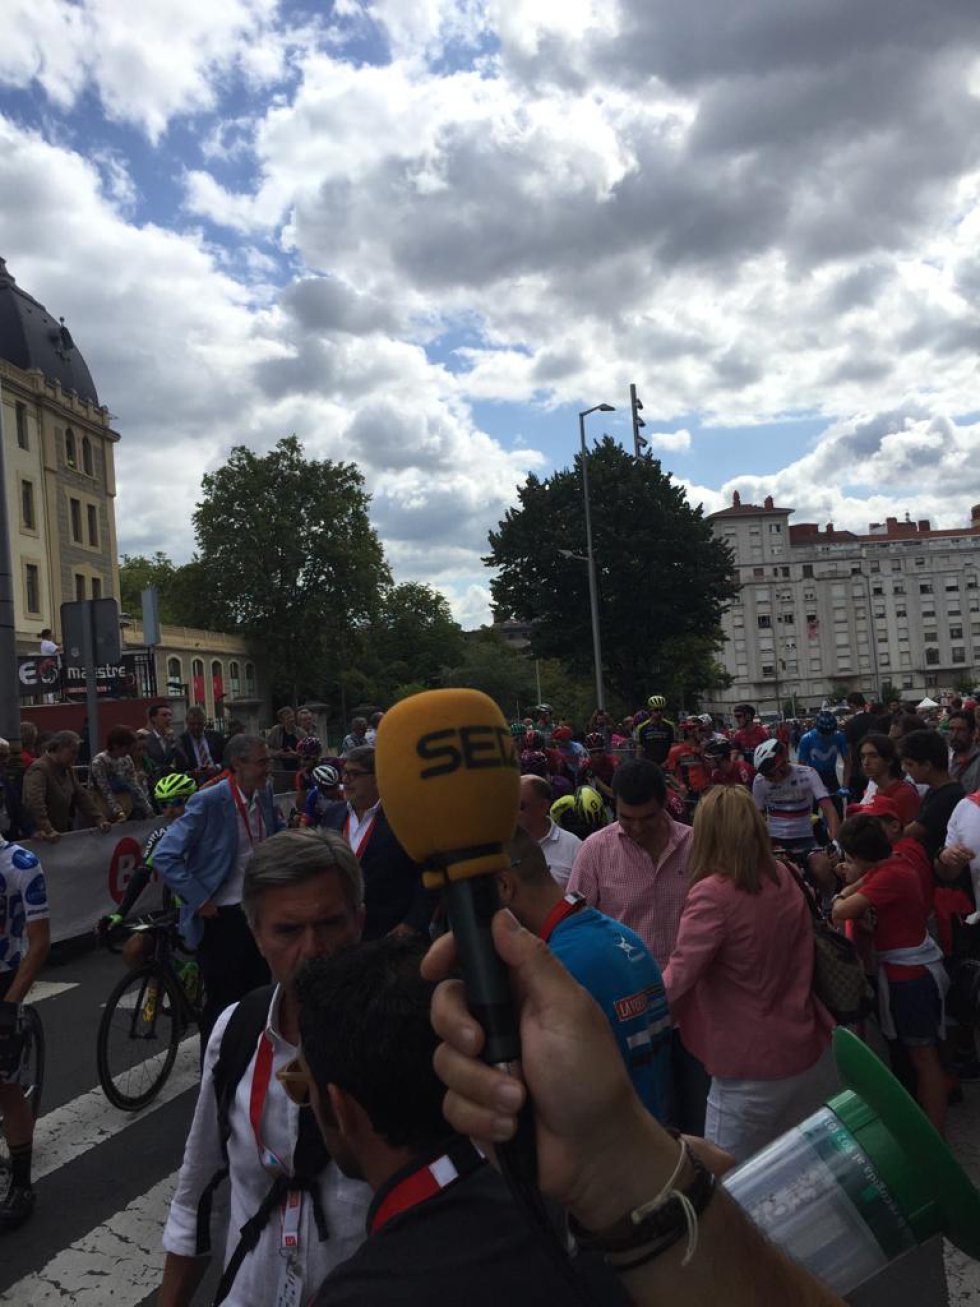 Las mejores imágenes del paso de la Vuelta por Bilbao